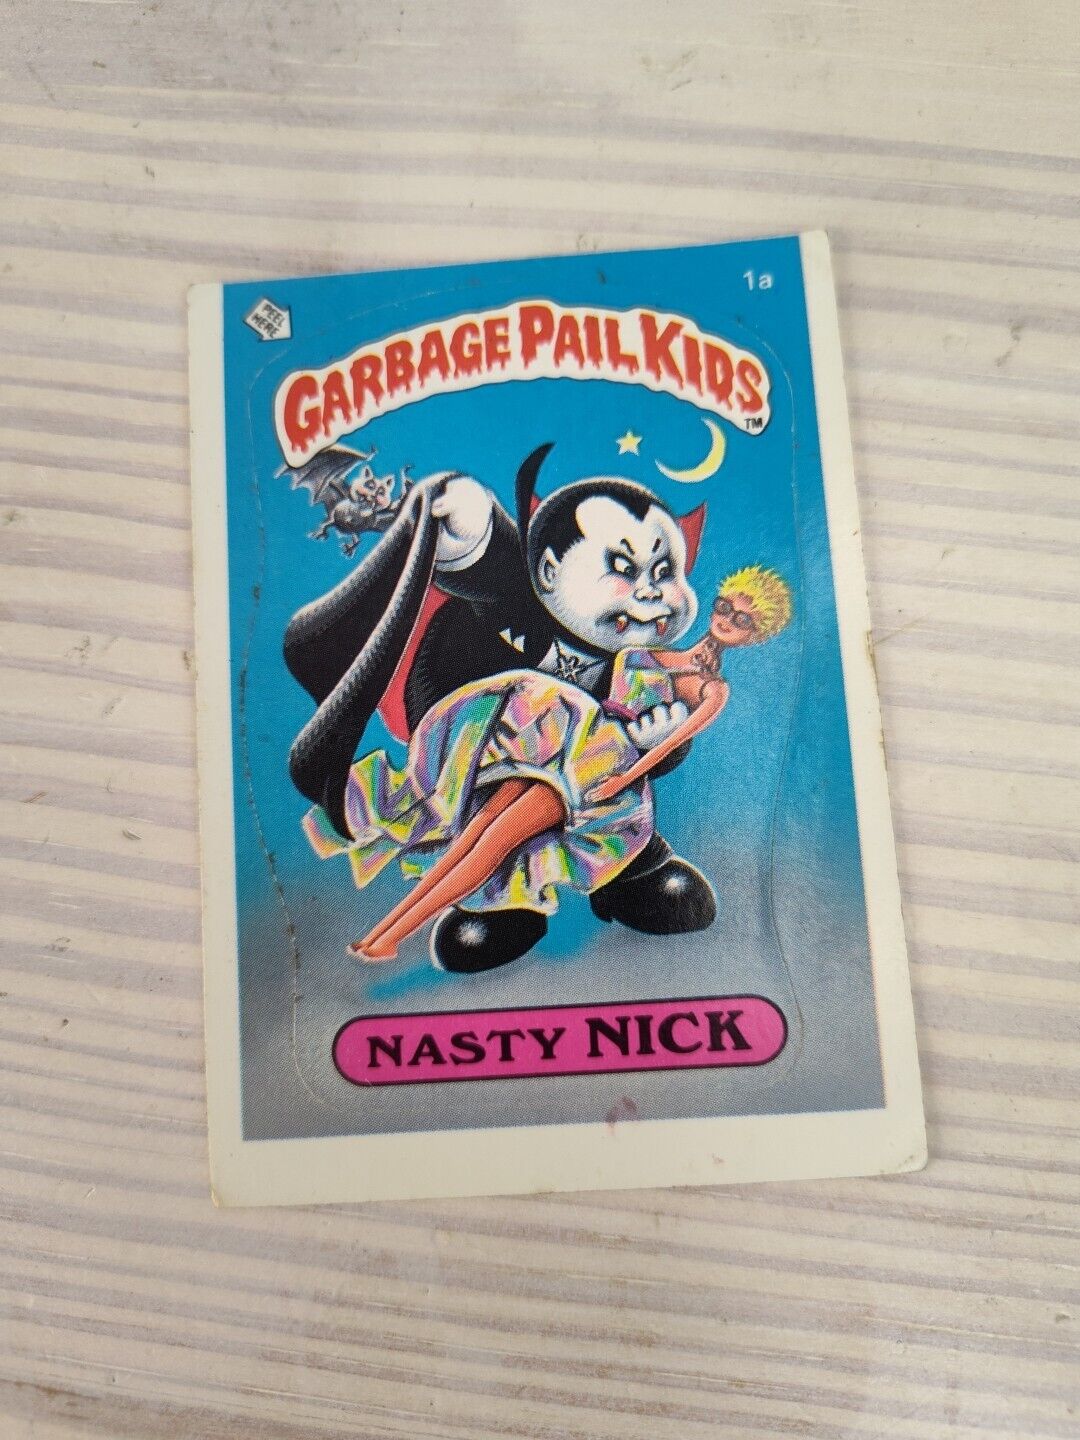 1985 Topps Garbage Pail Kids Nasty Nick GPK Original Series 1 OS1 #1a